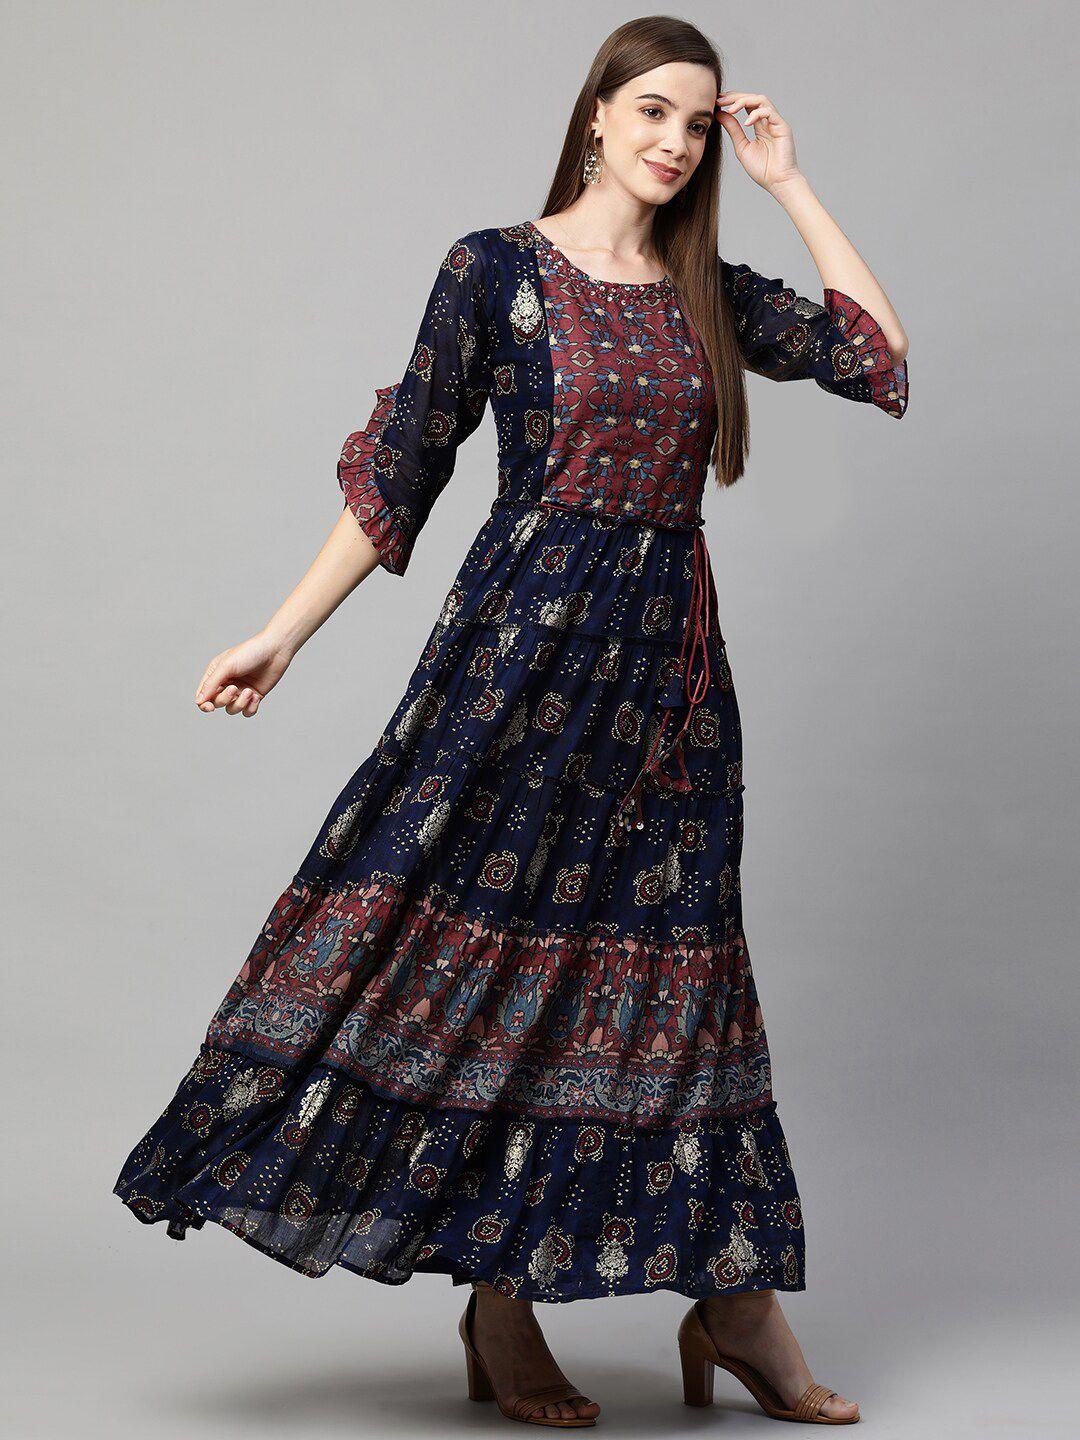 fashor navy blue ethnic motifs ethnic maxi dress